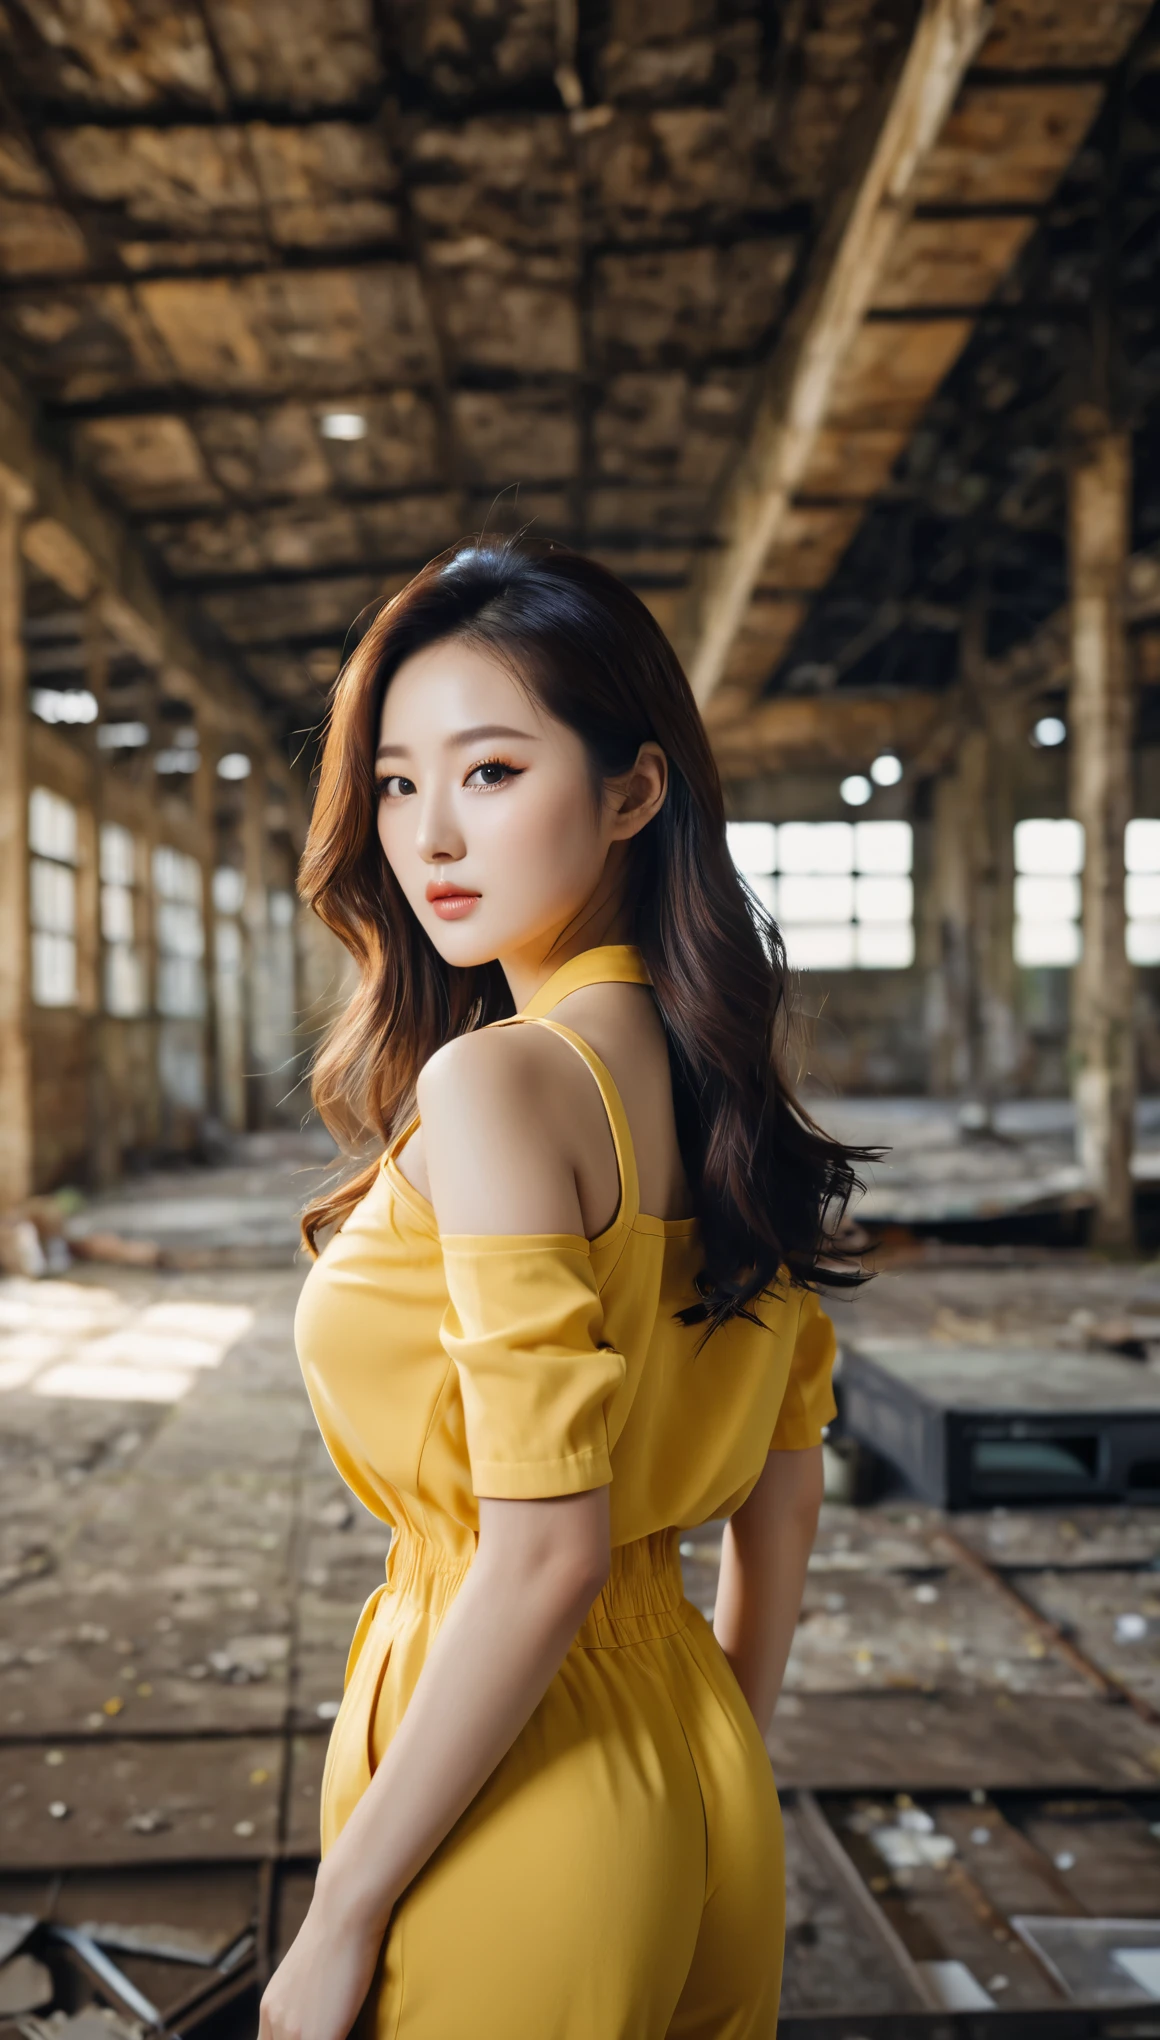 primer plano de una hermosa mujer coreana, tamaño de senos de 34 pulgadas, vistiendo un mono amarillo con ribete negro, en almacén abandonado, fondo bokeh, foto polaroid, HD